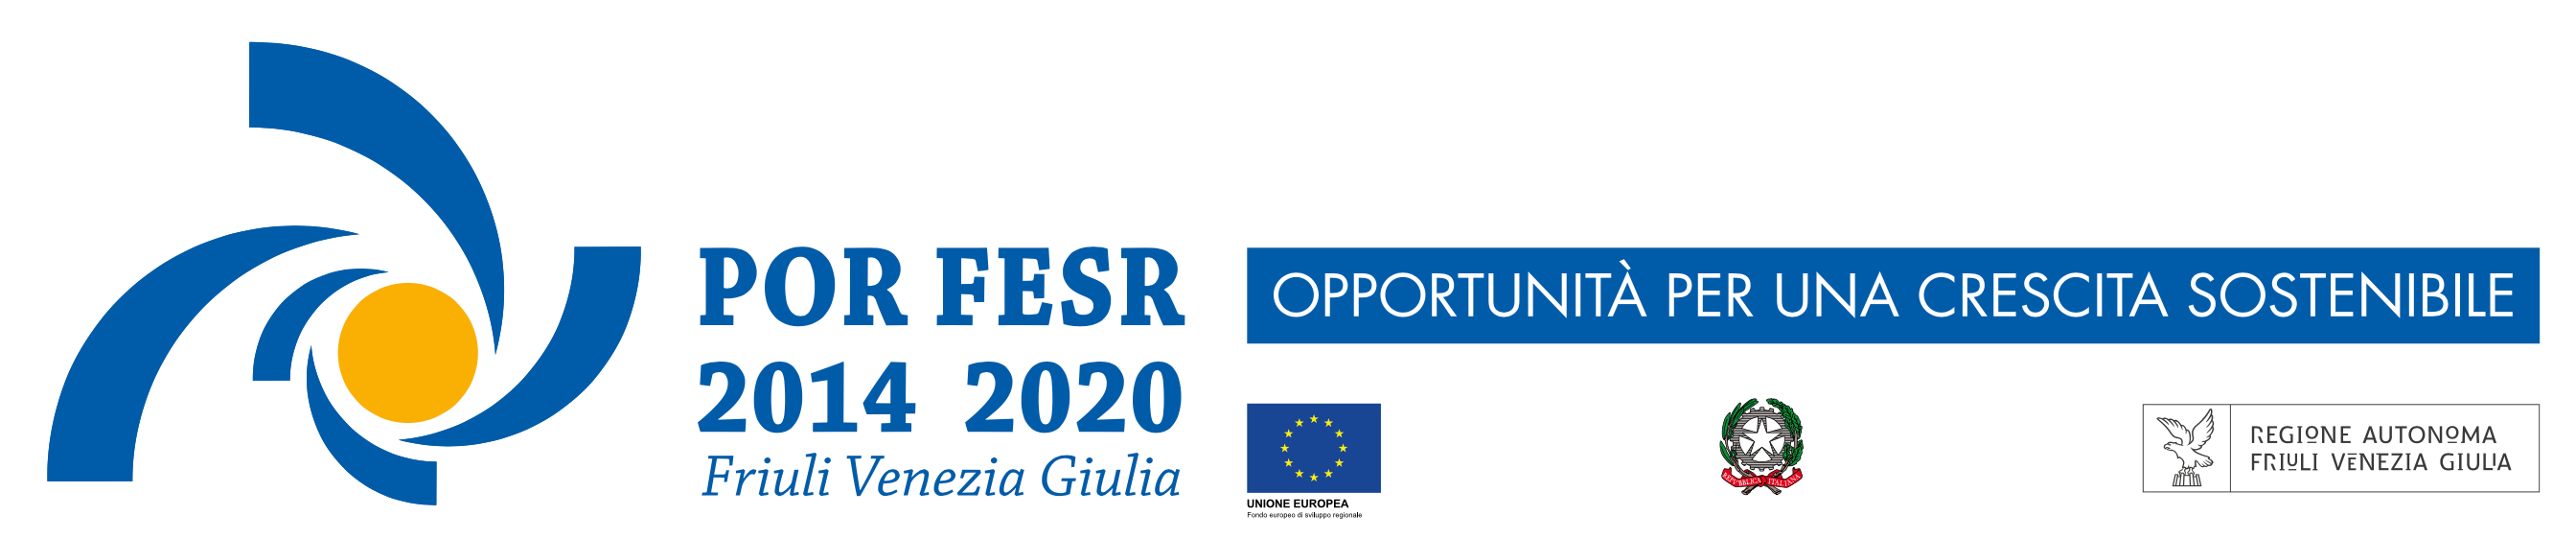 Bando POR FESR 2014-2020 per il supporto alle nuove realtà imprenditoriali